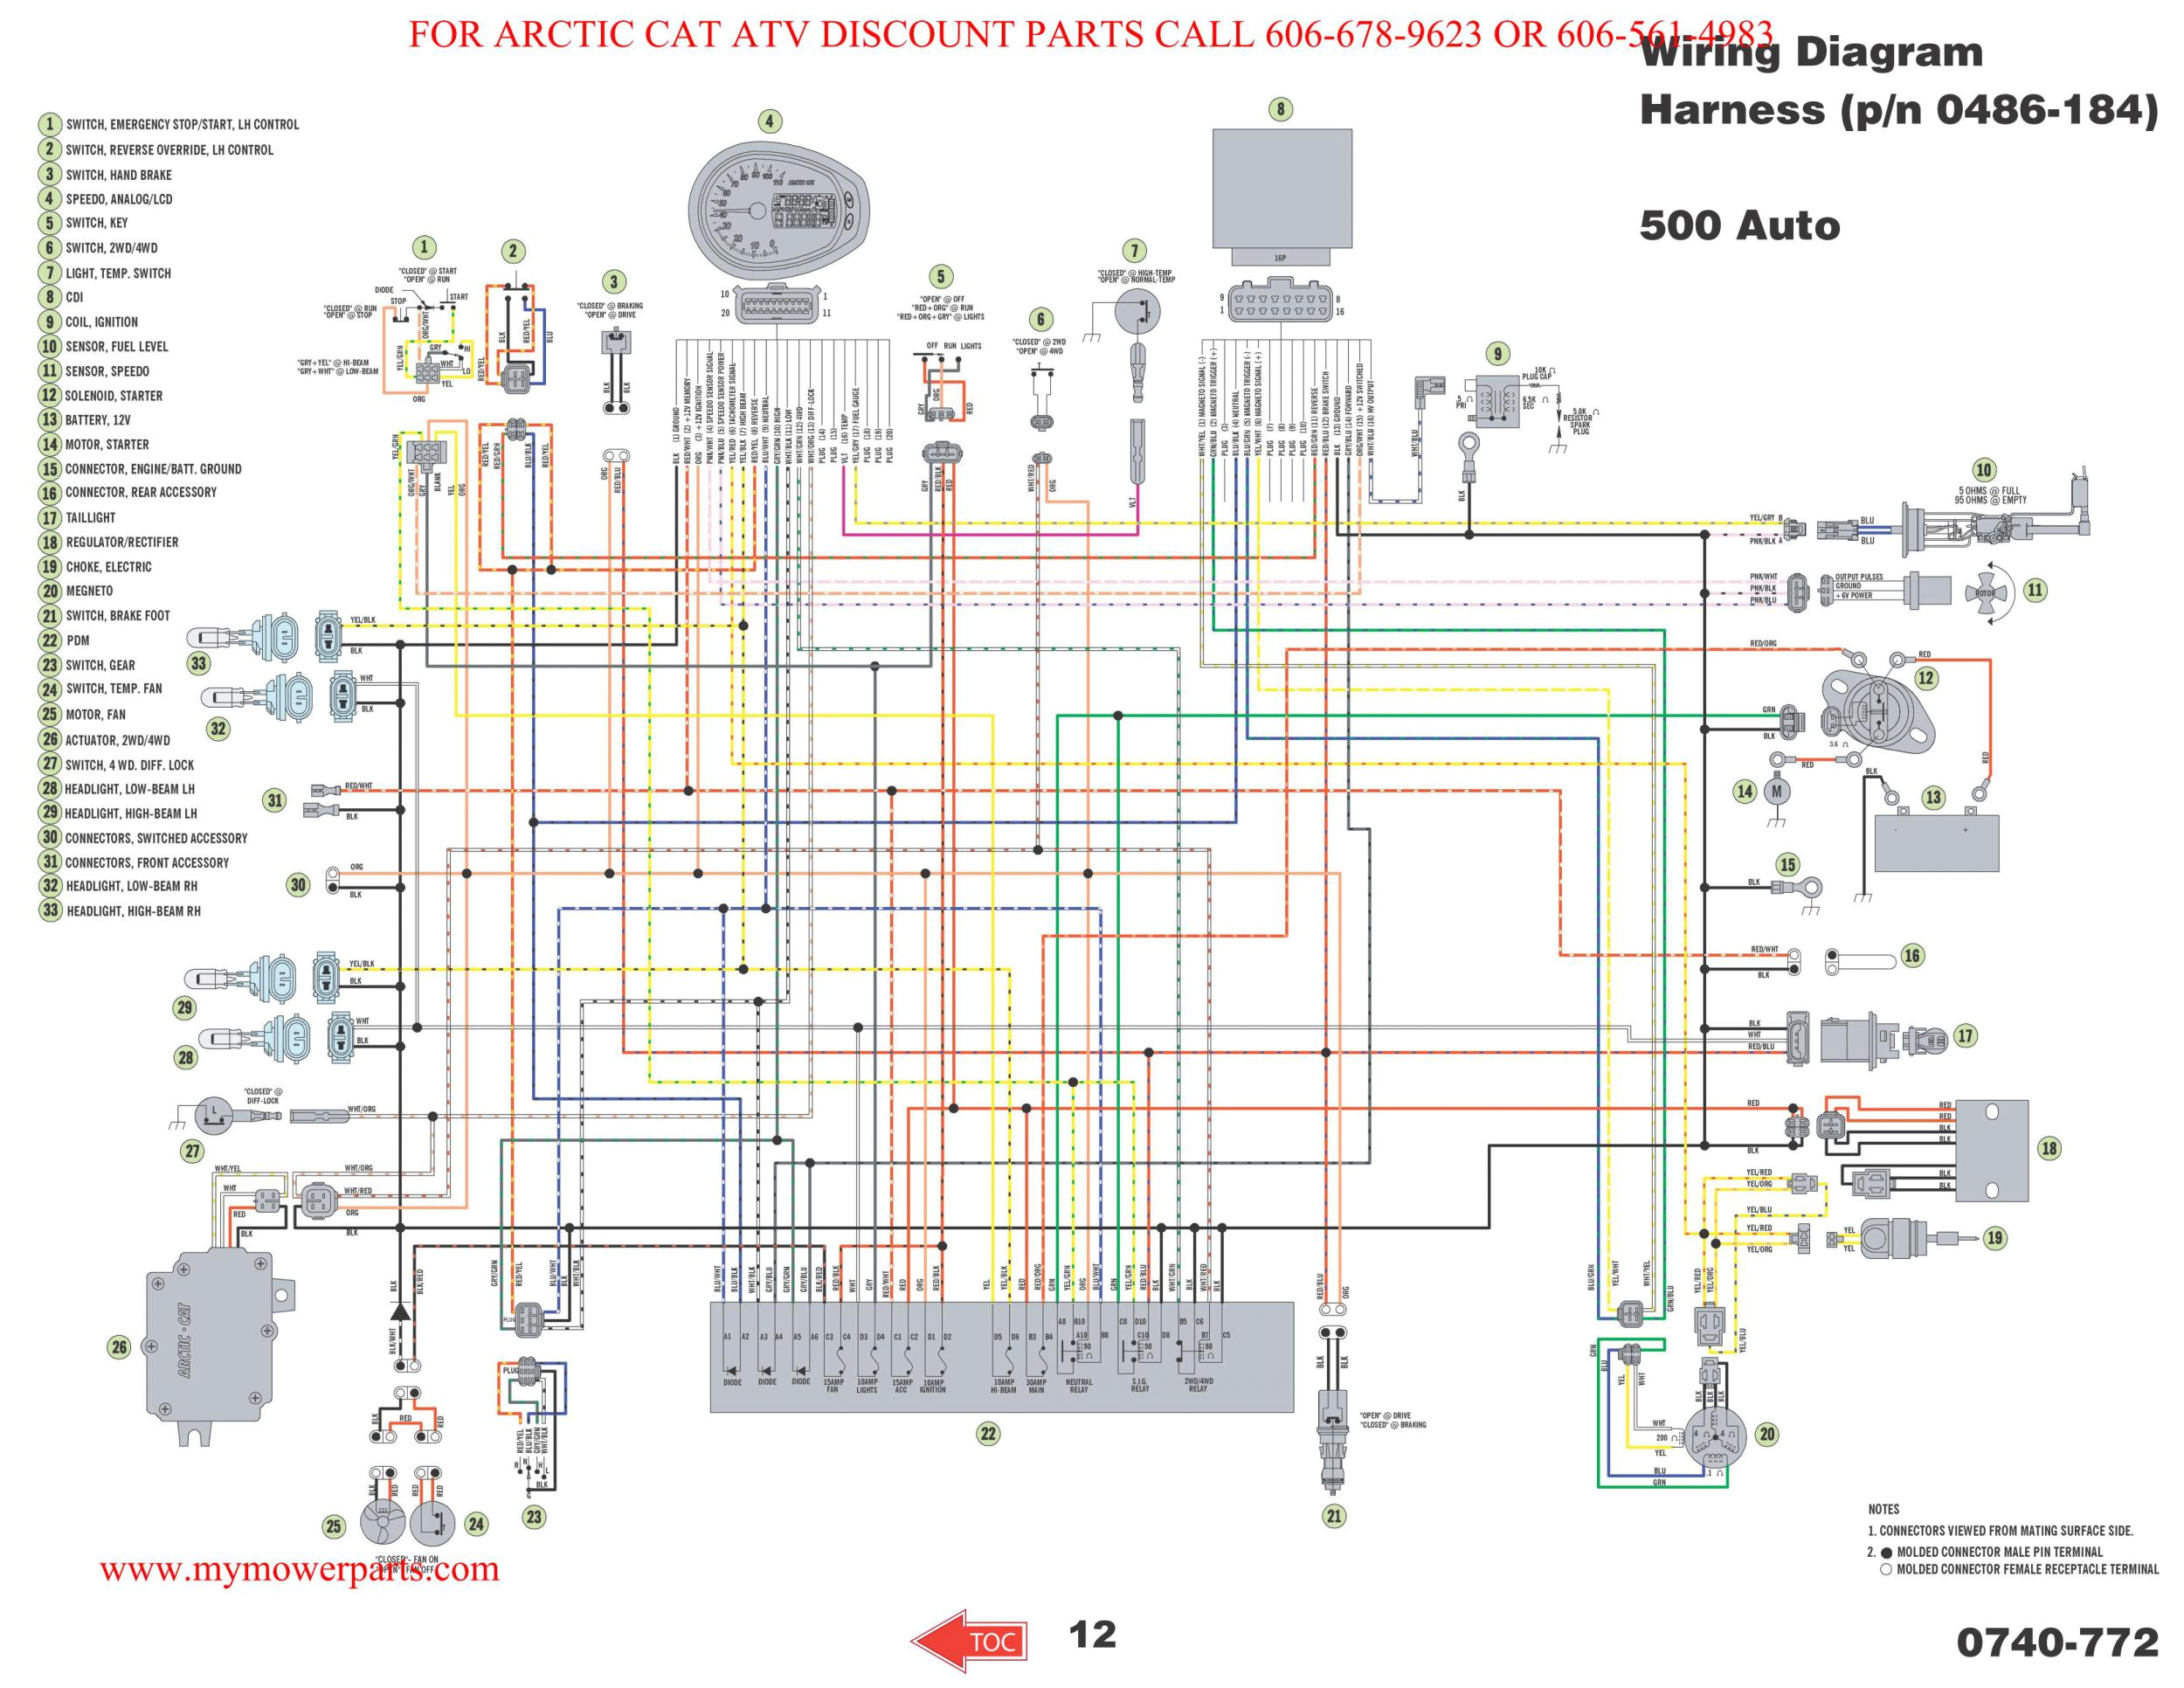 polaris xplorer 400 wiring diagram wiring diagram today 1995 polaris xplorer 400 wiring diagram 1995 polaris wiring diagram